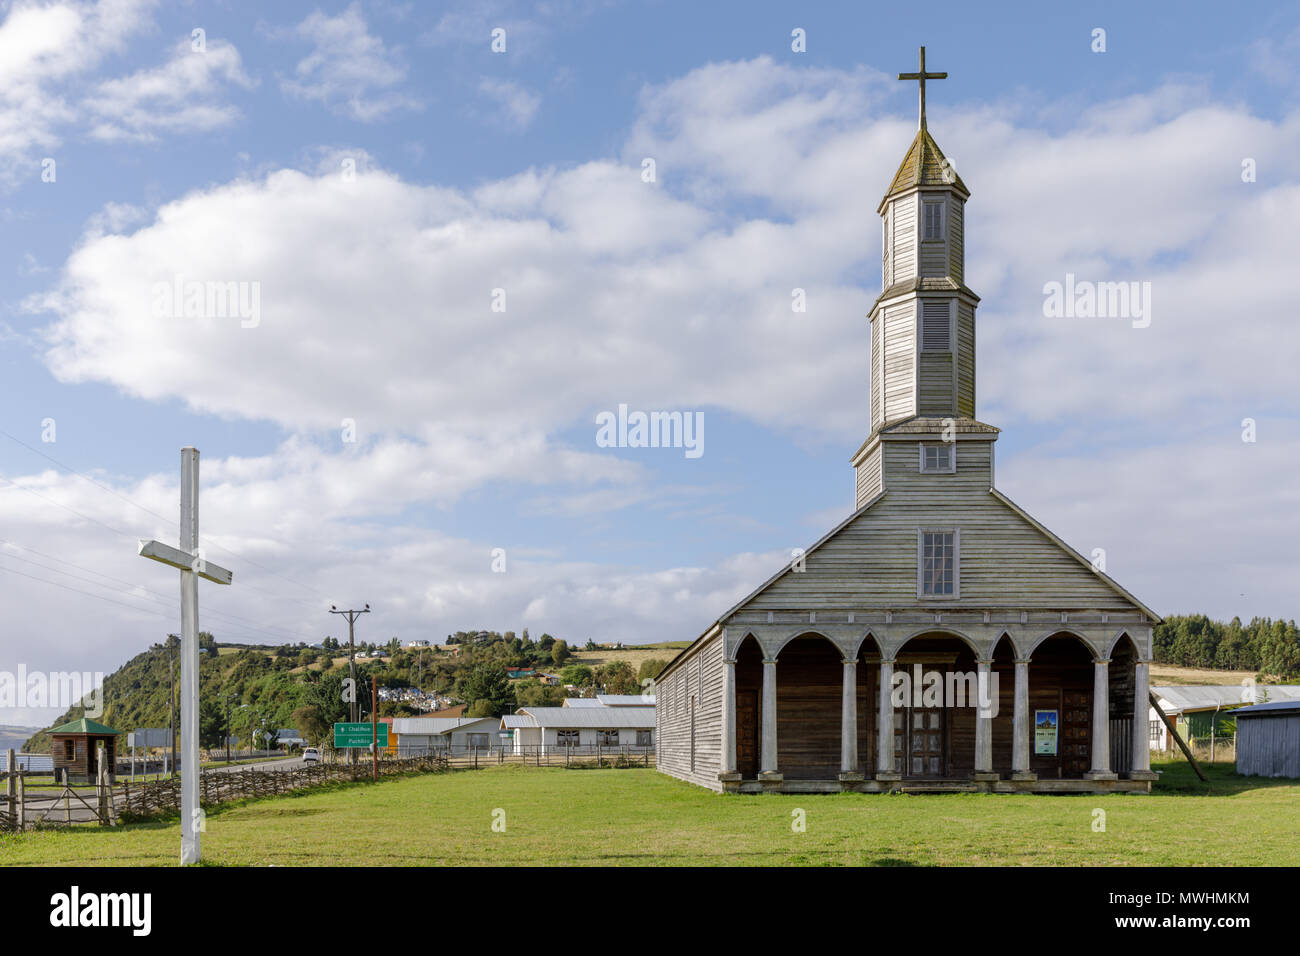 Chile: Jesus Nazareno Church is a Unesco World Heritage Site in Aldachildo, Lemuy Island, Chiloé archipelago. Stock Photo